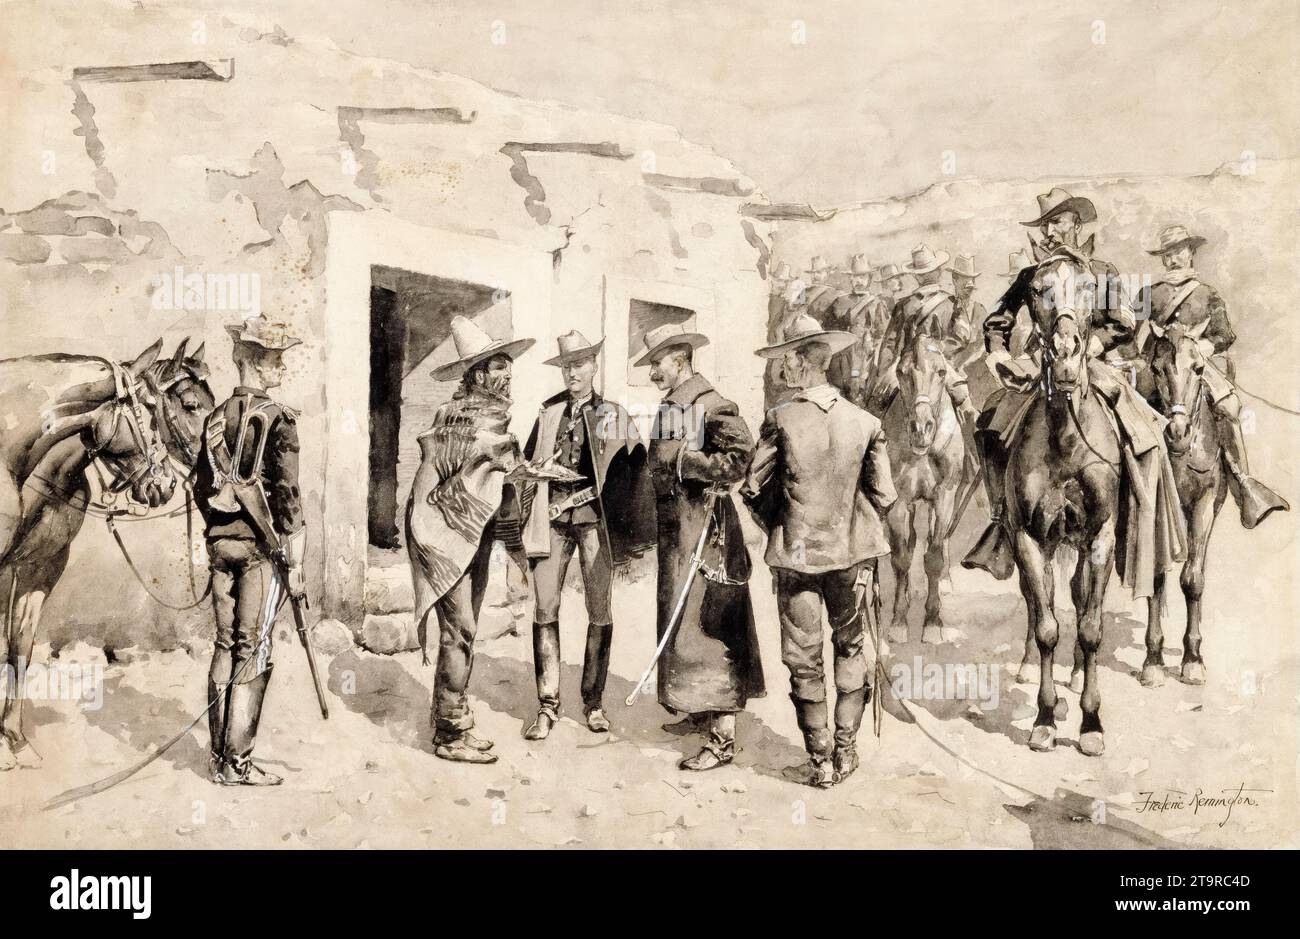 Frederic Remington, cavalerie américaine chassant les Garza sur le Rio Grande, peinture à l'aquarelle, vers 1892 Banque D'Images